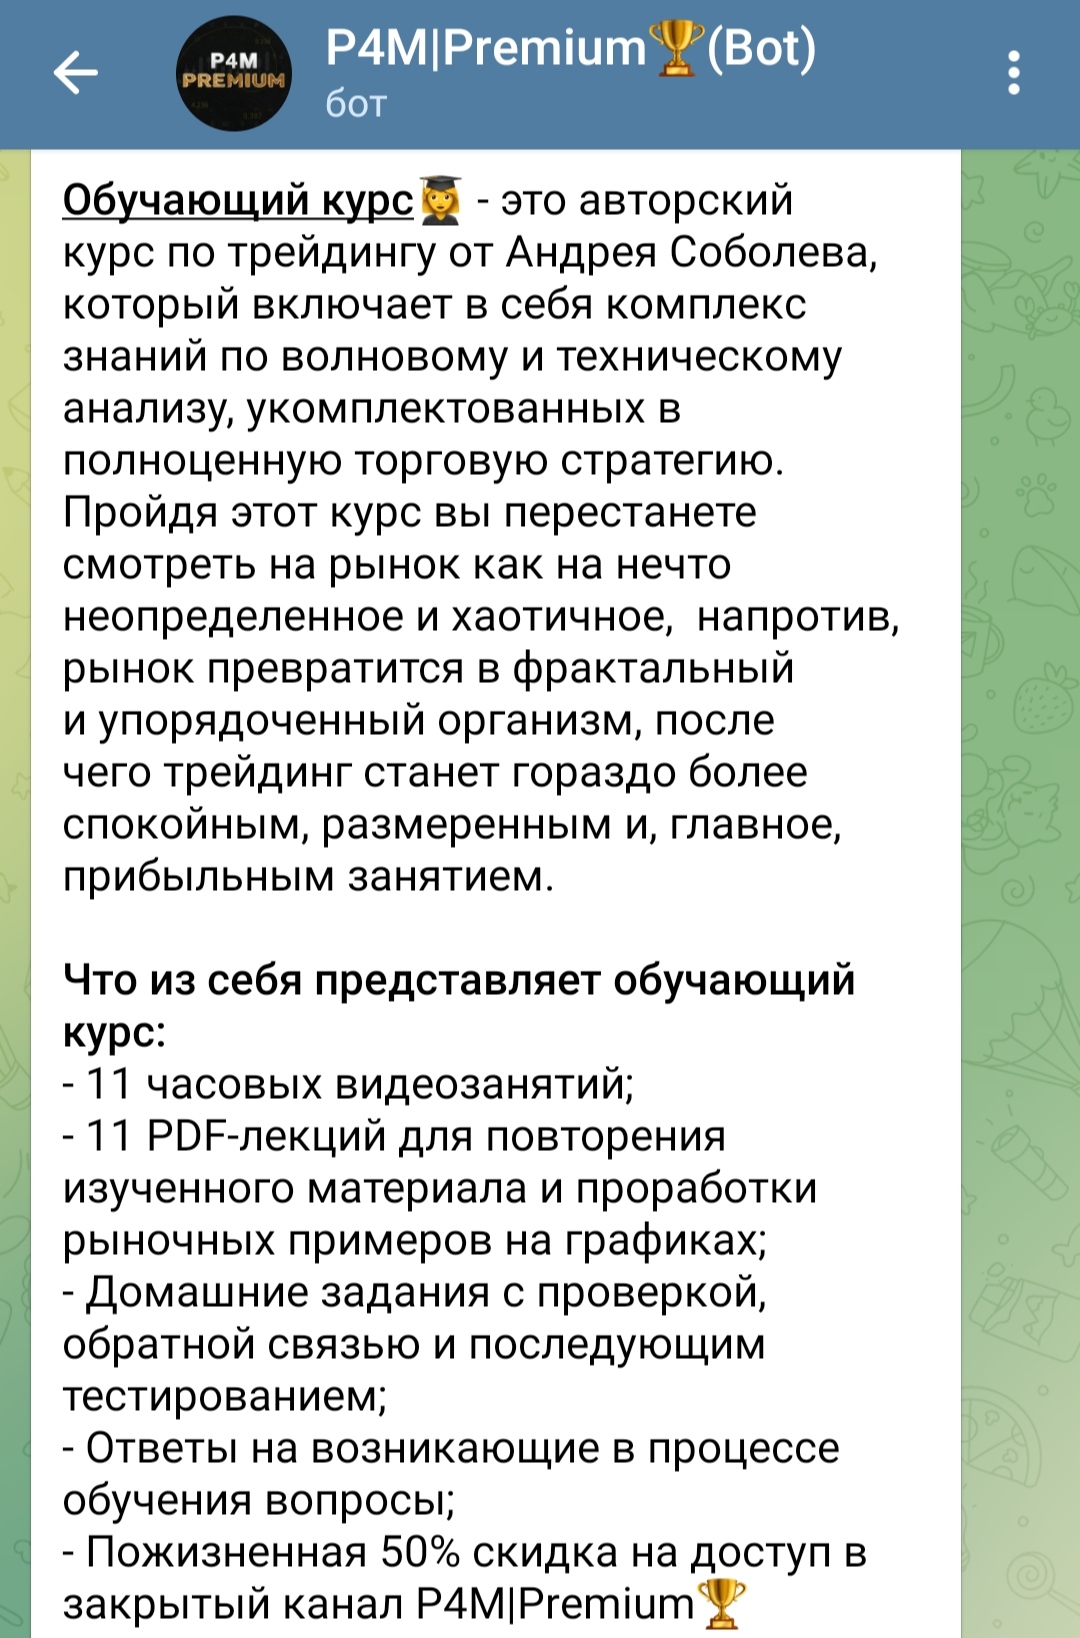 Андрей Соболев телеграм пост